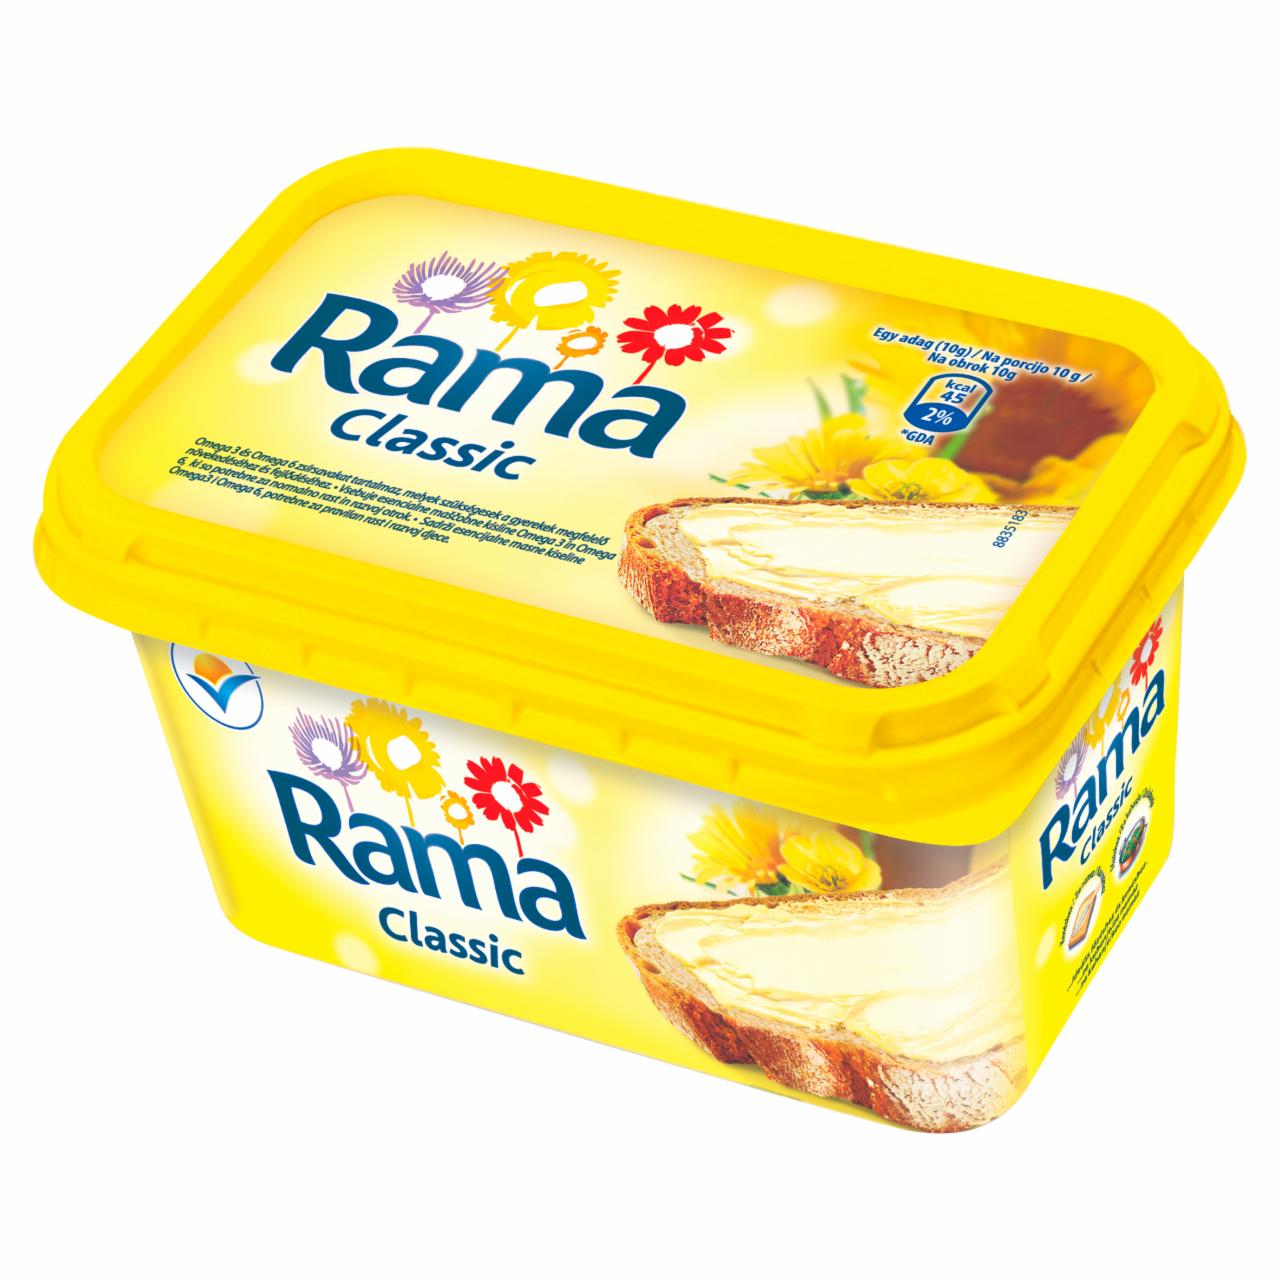 Képek - Rama Classic csészés margarin 500 g